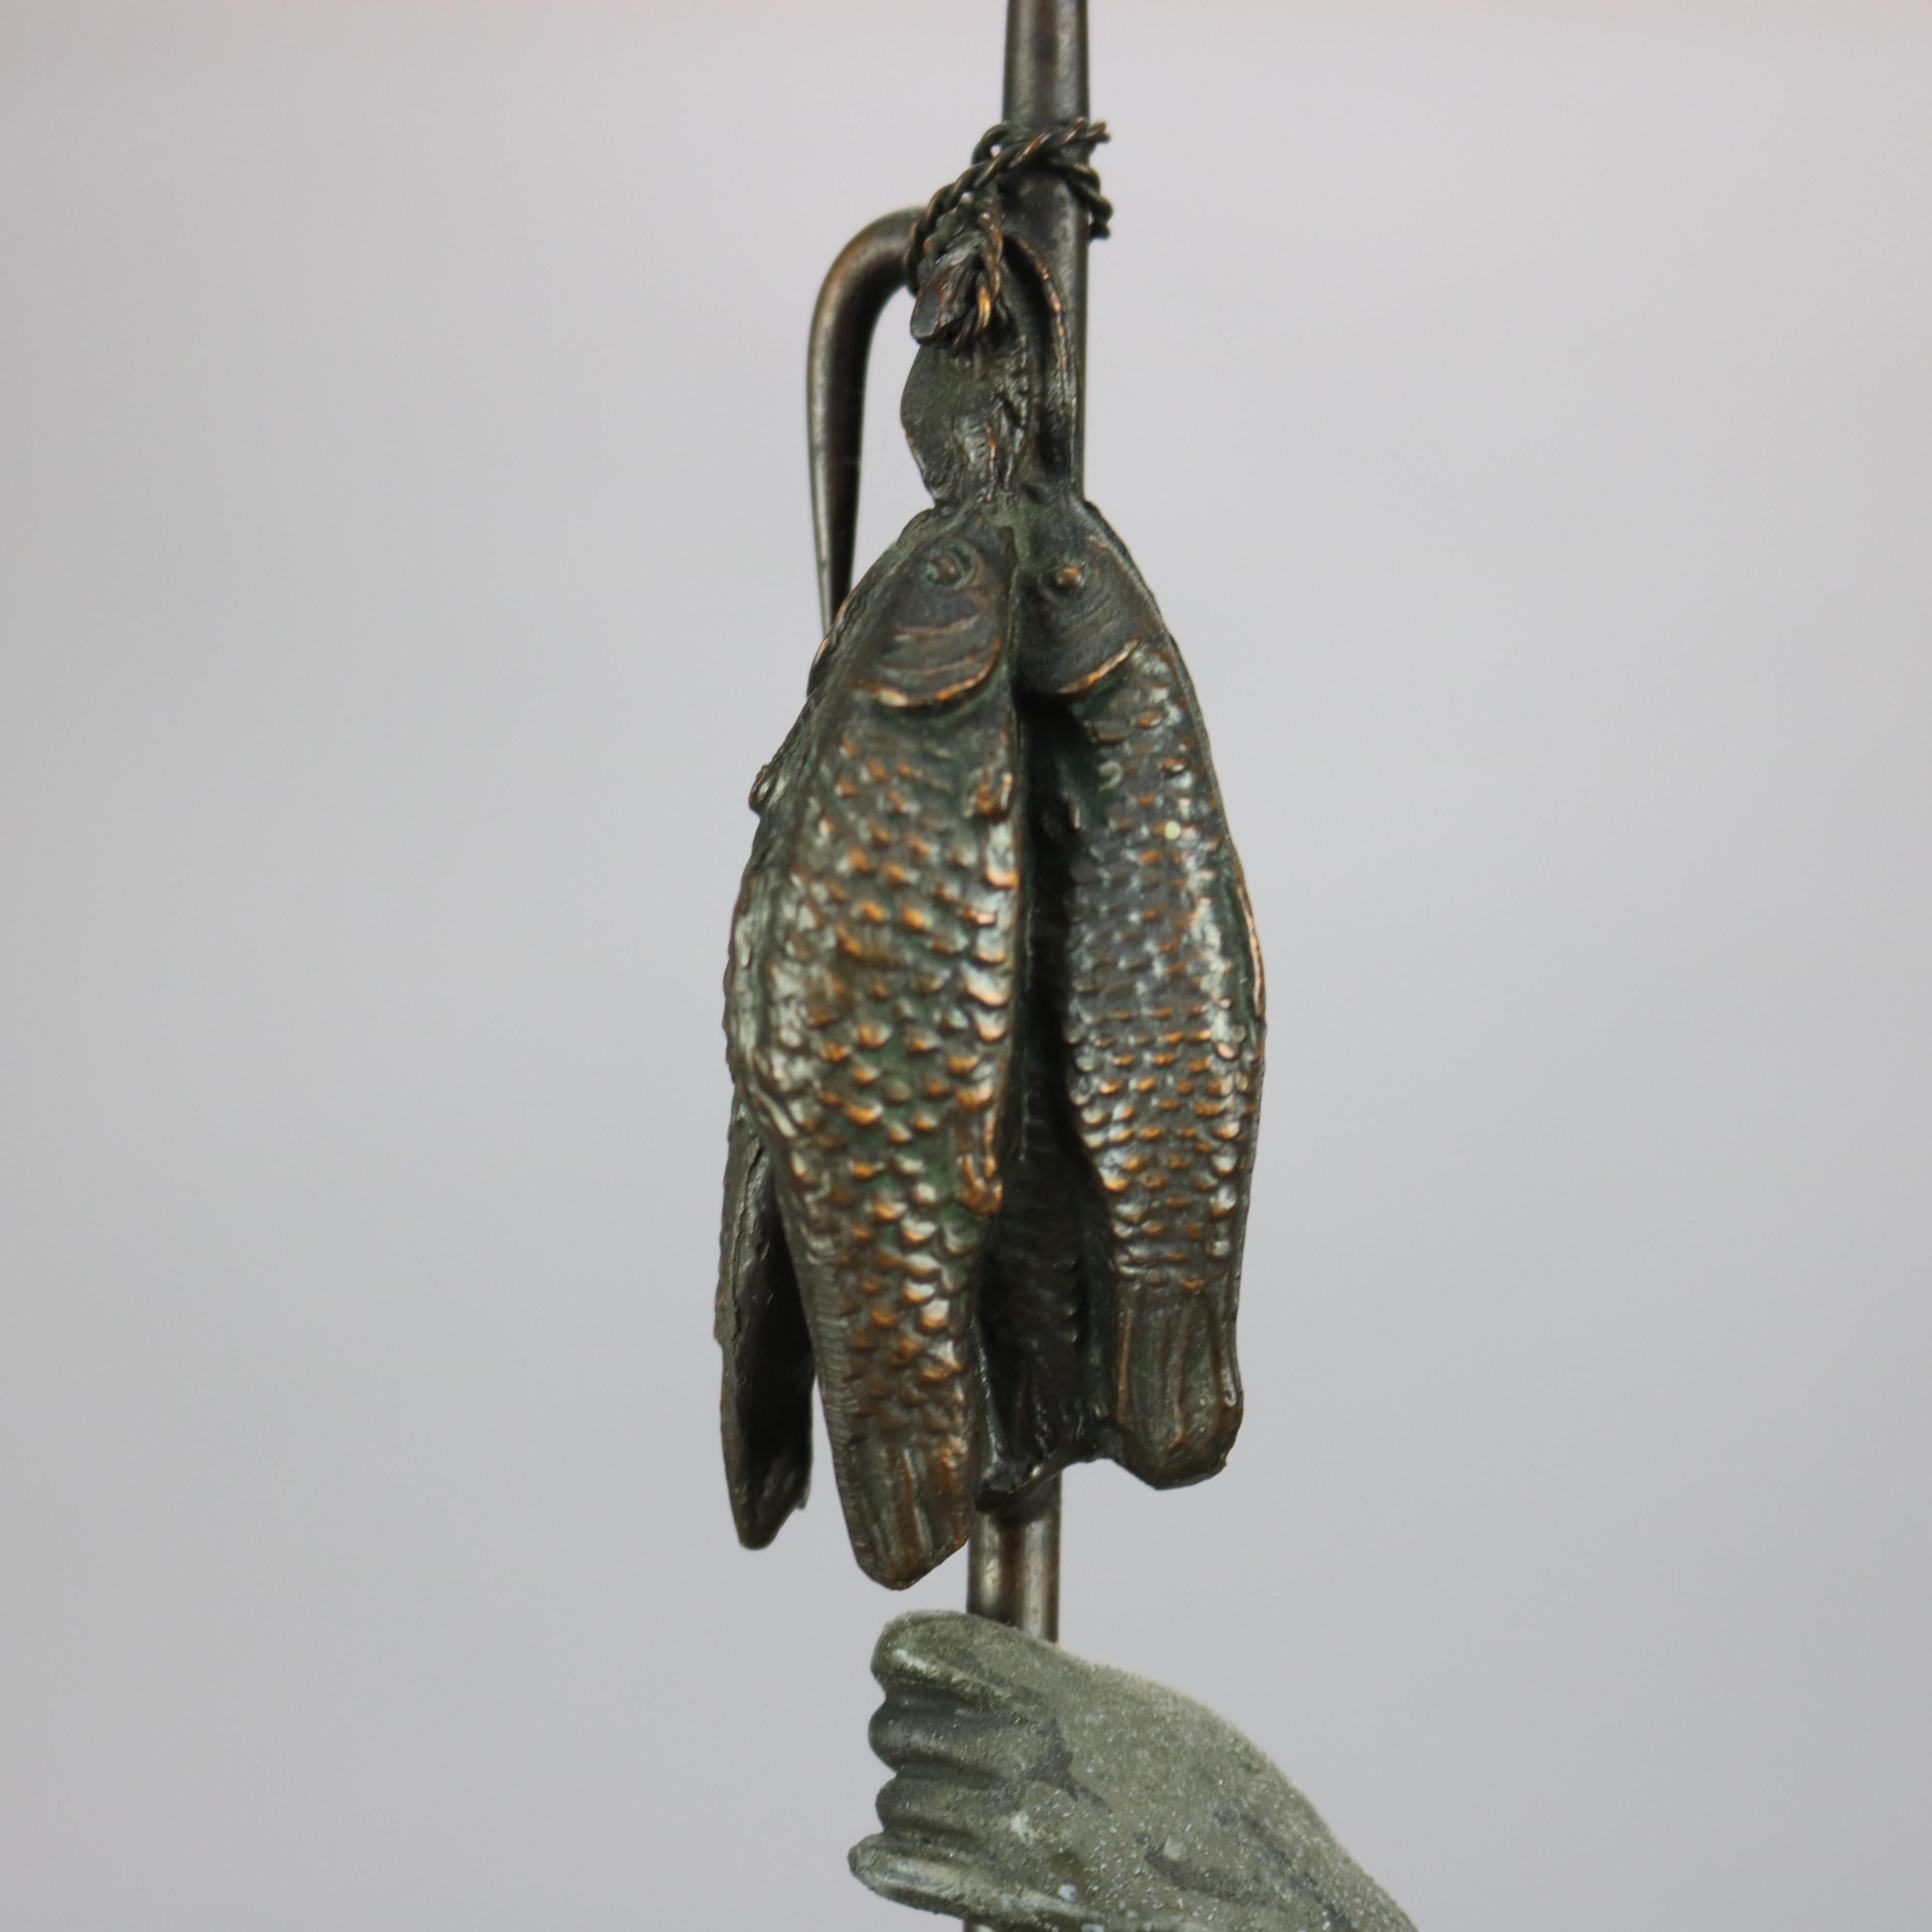 Antique Bronzed Cast Metal Renaissance Statue, Fisherman with His Catch, c1890 9